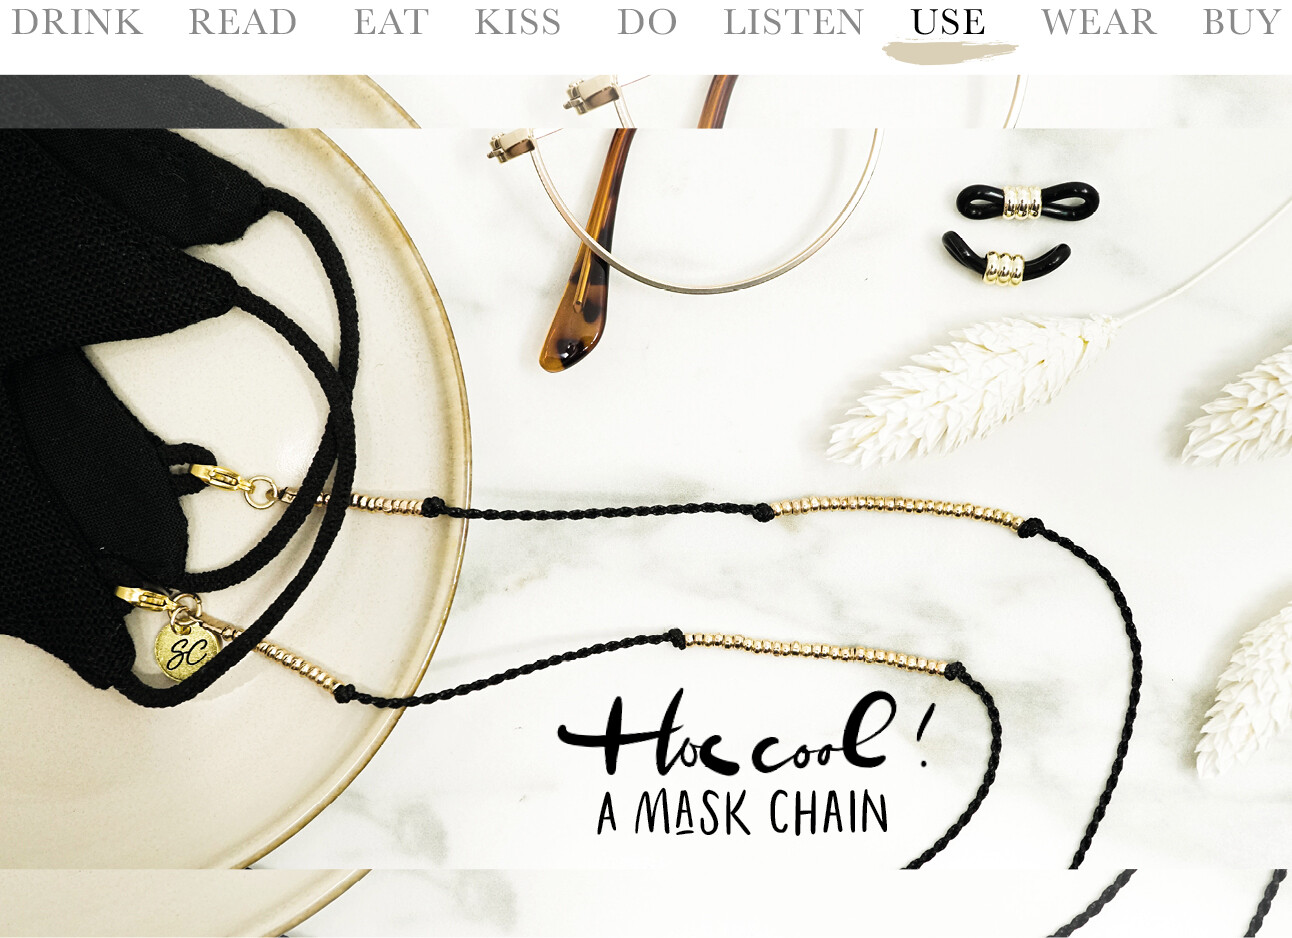 Mask chain